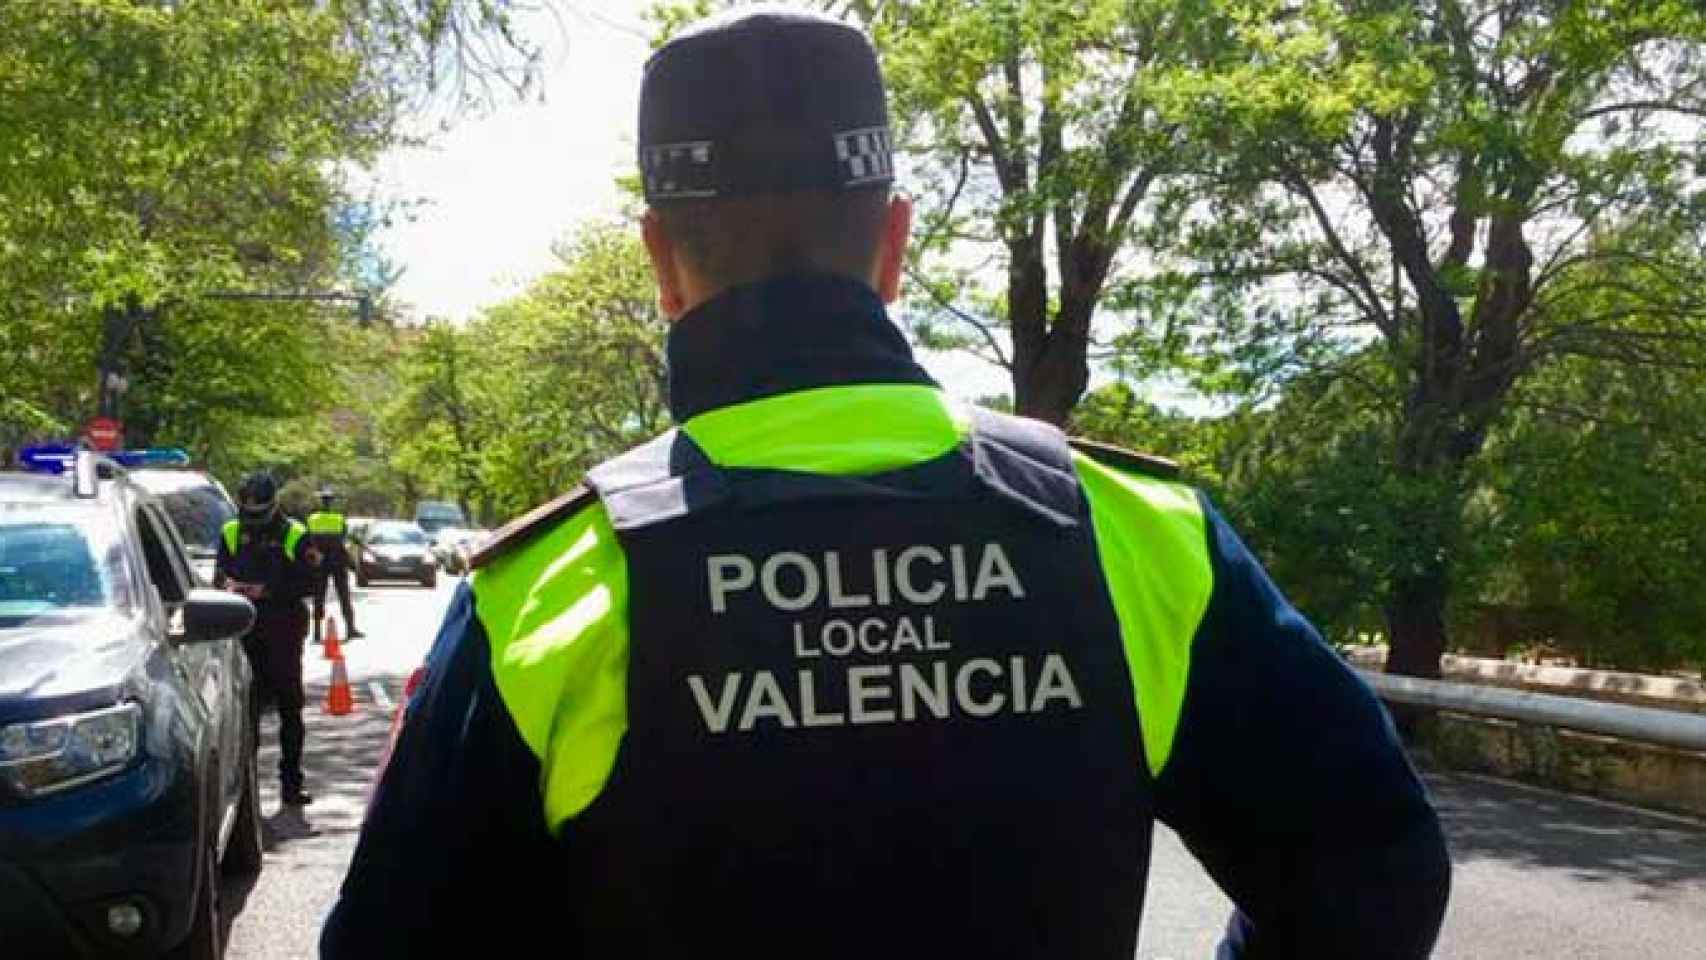 Un agente de la policía local de Valencia / @policialocalvlc